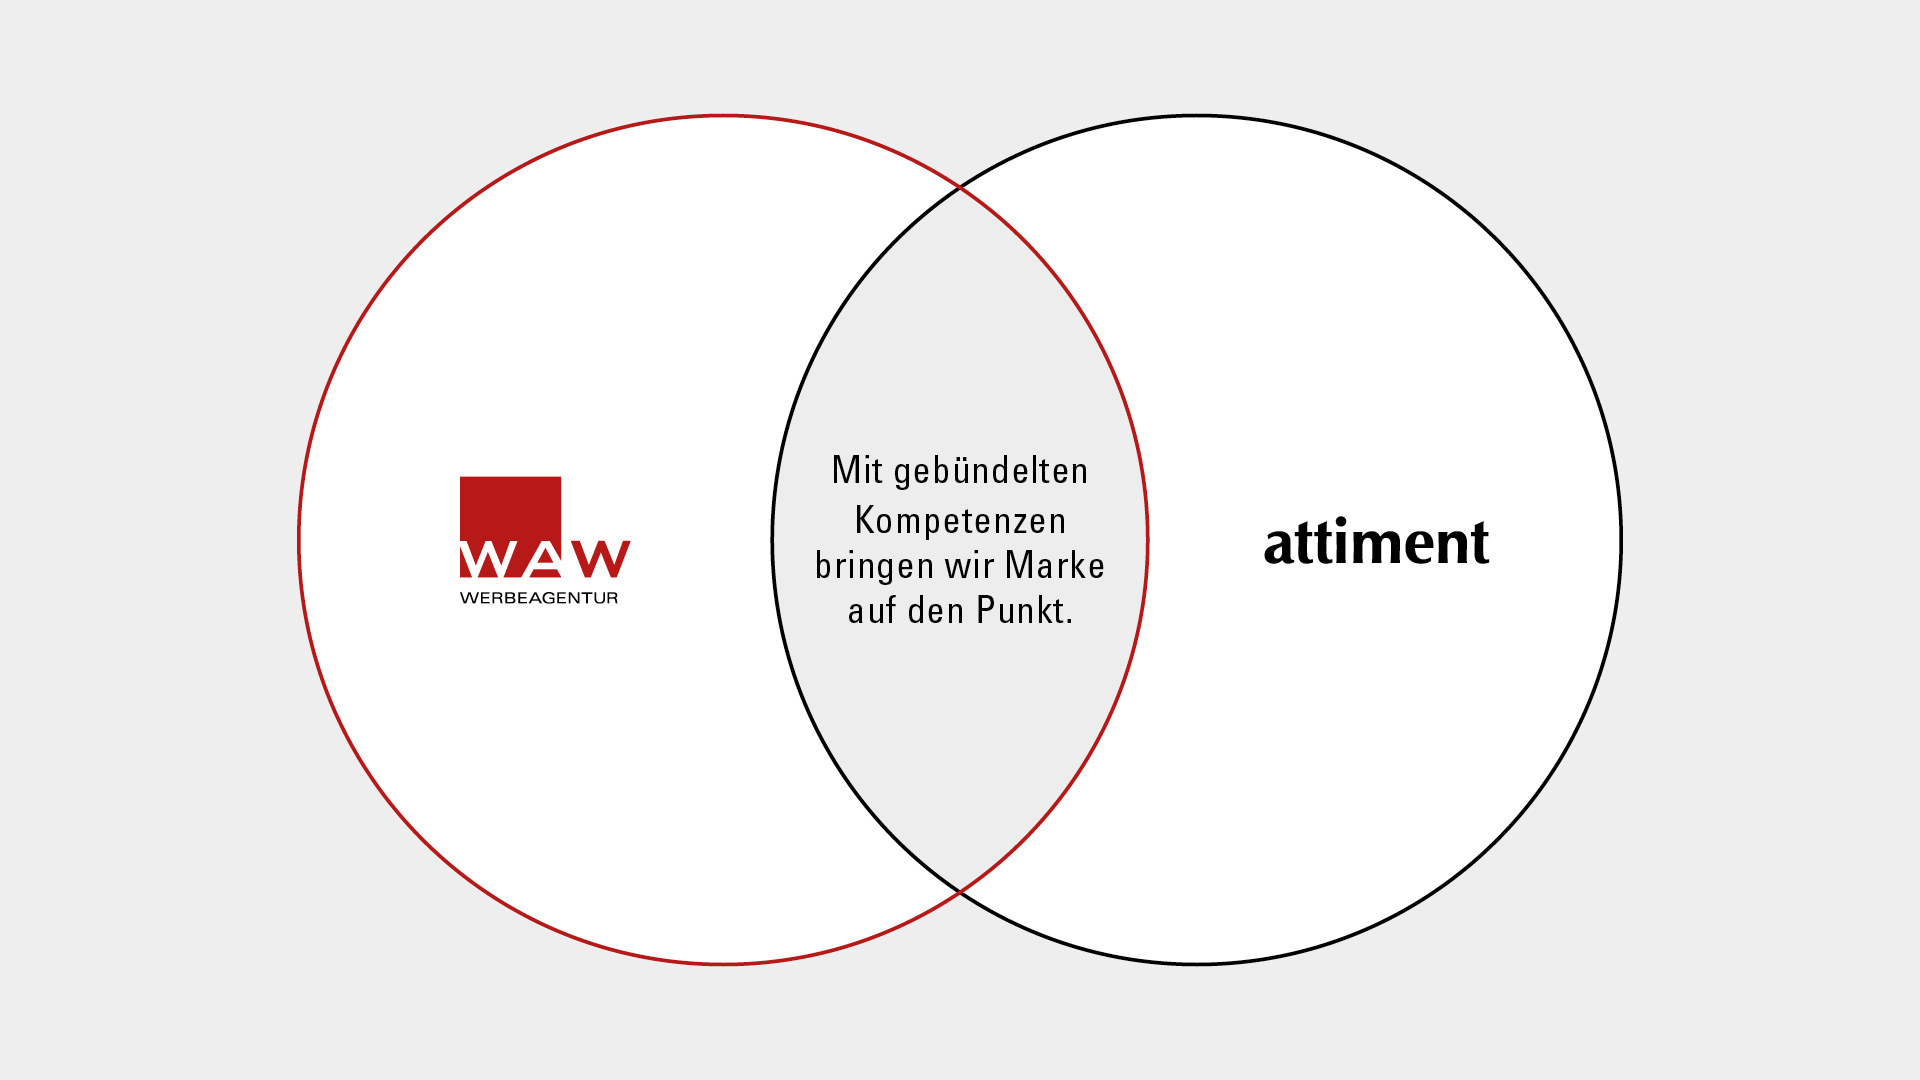 WAW x attiment